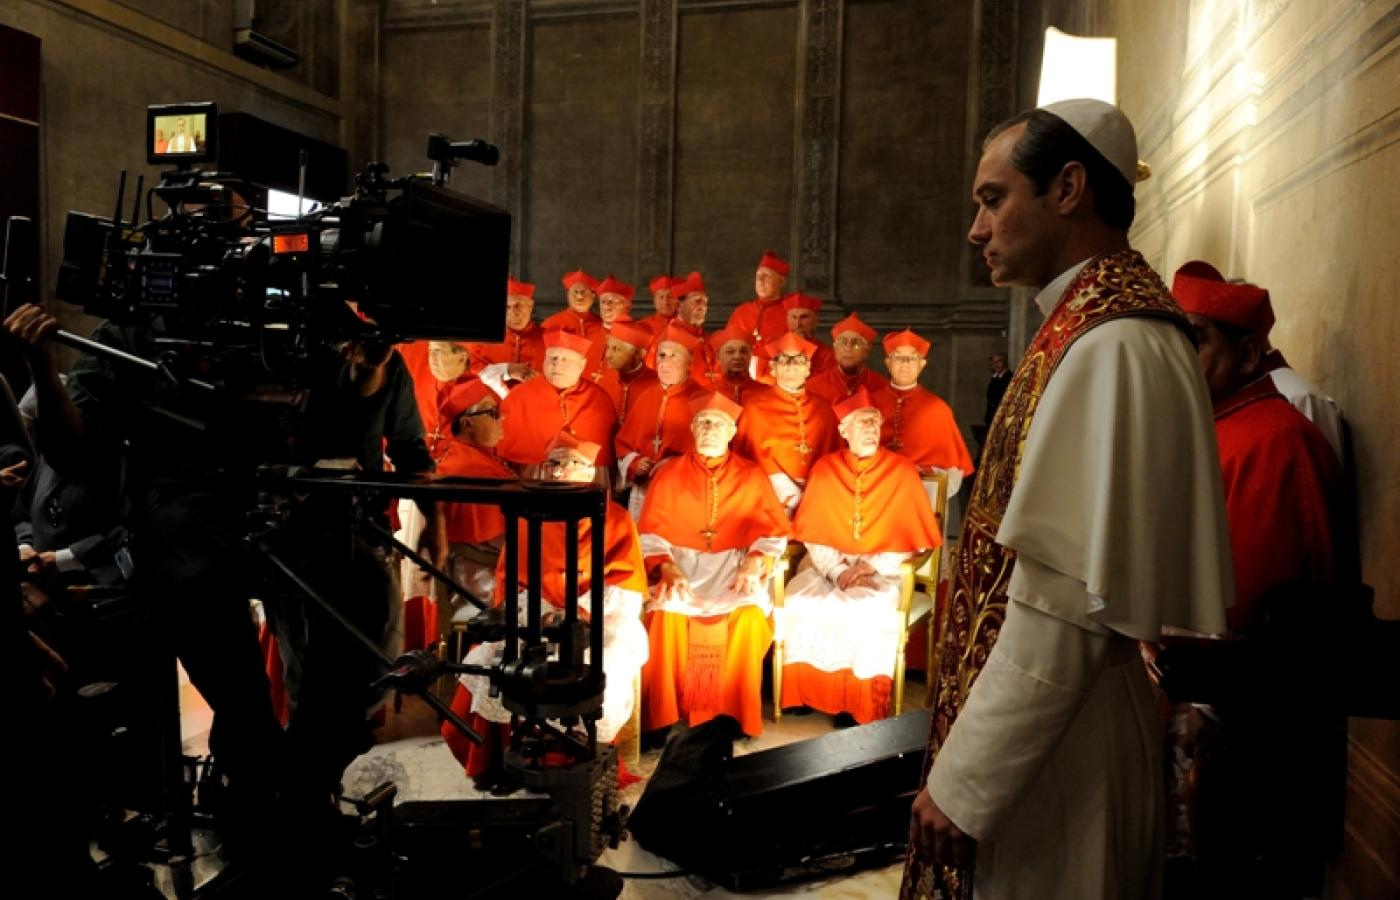 Kadr z serialu HBO „Młody papież” (reż. Paolo Sorrentino, 2016), wyk. Jude Law, Diane Keaton, Silvio Orlando i inni. (Fot. Gianni Fiorito/materiały prasowe)